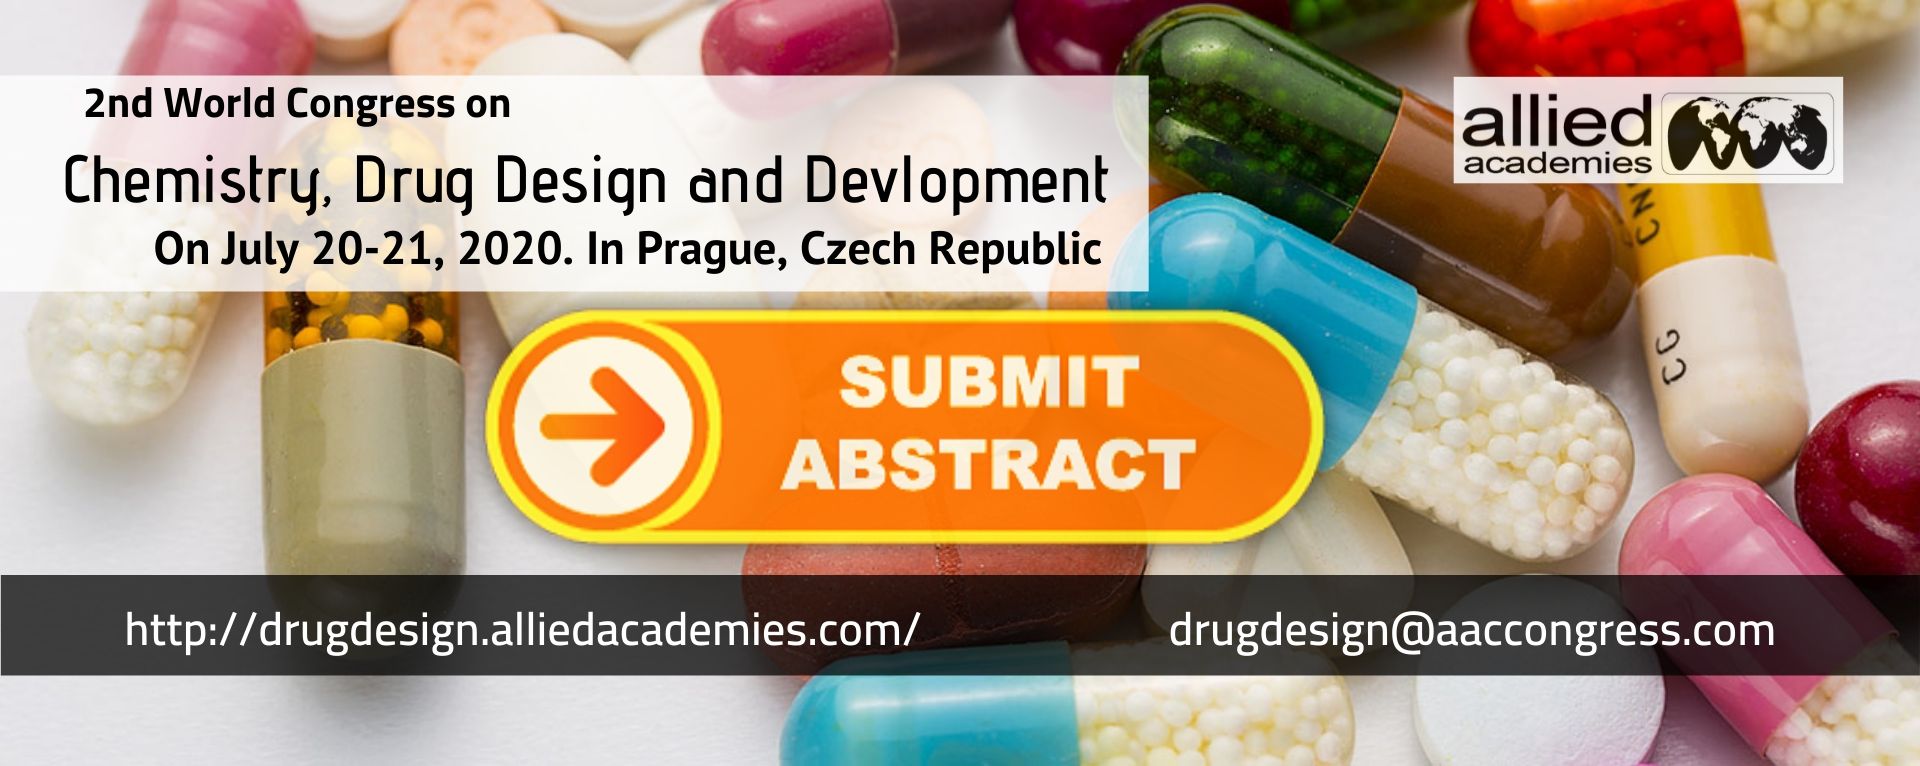 Congress on Drug Design and Devlopement